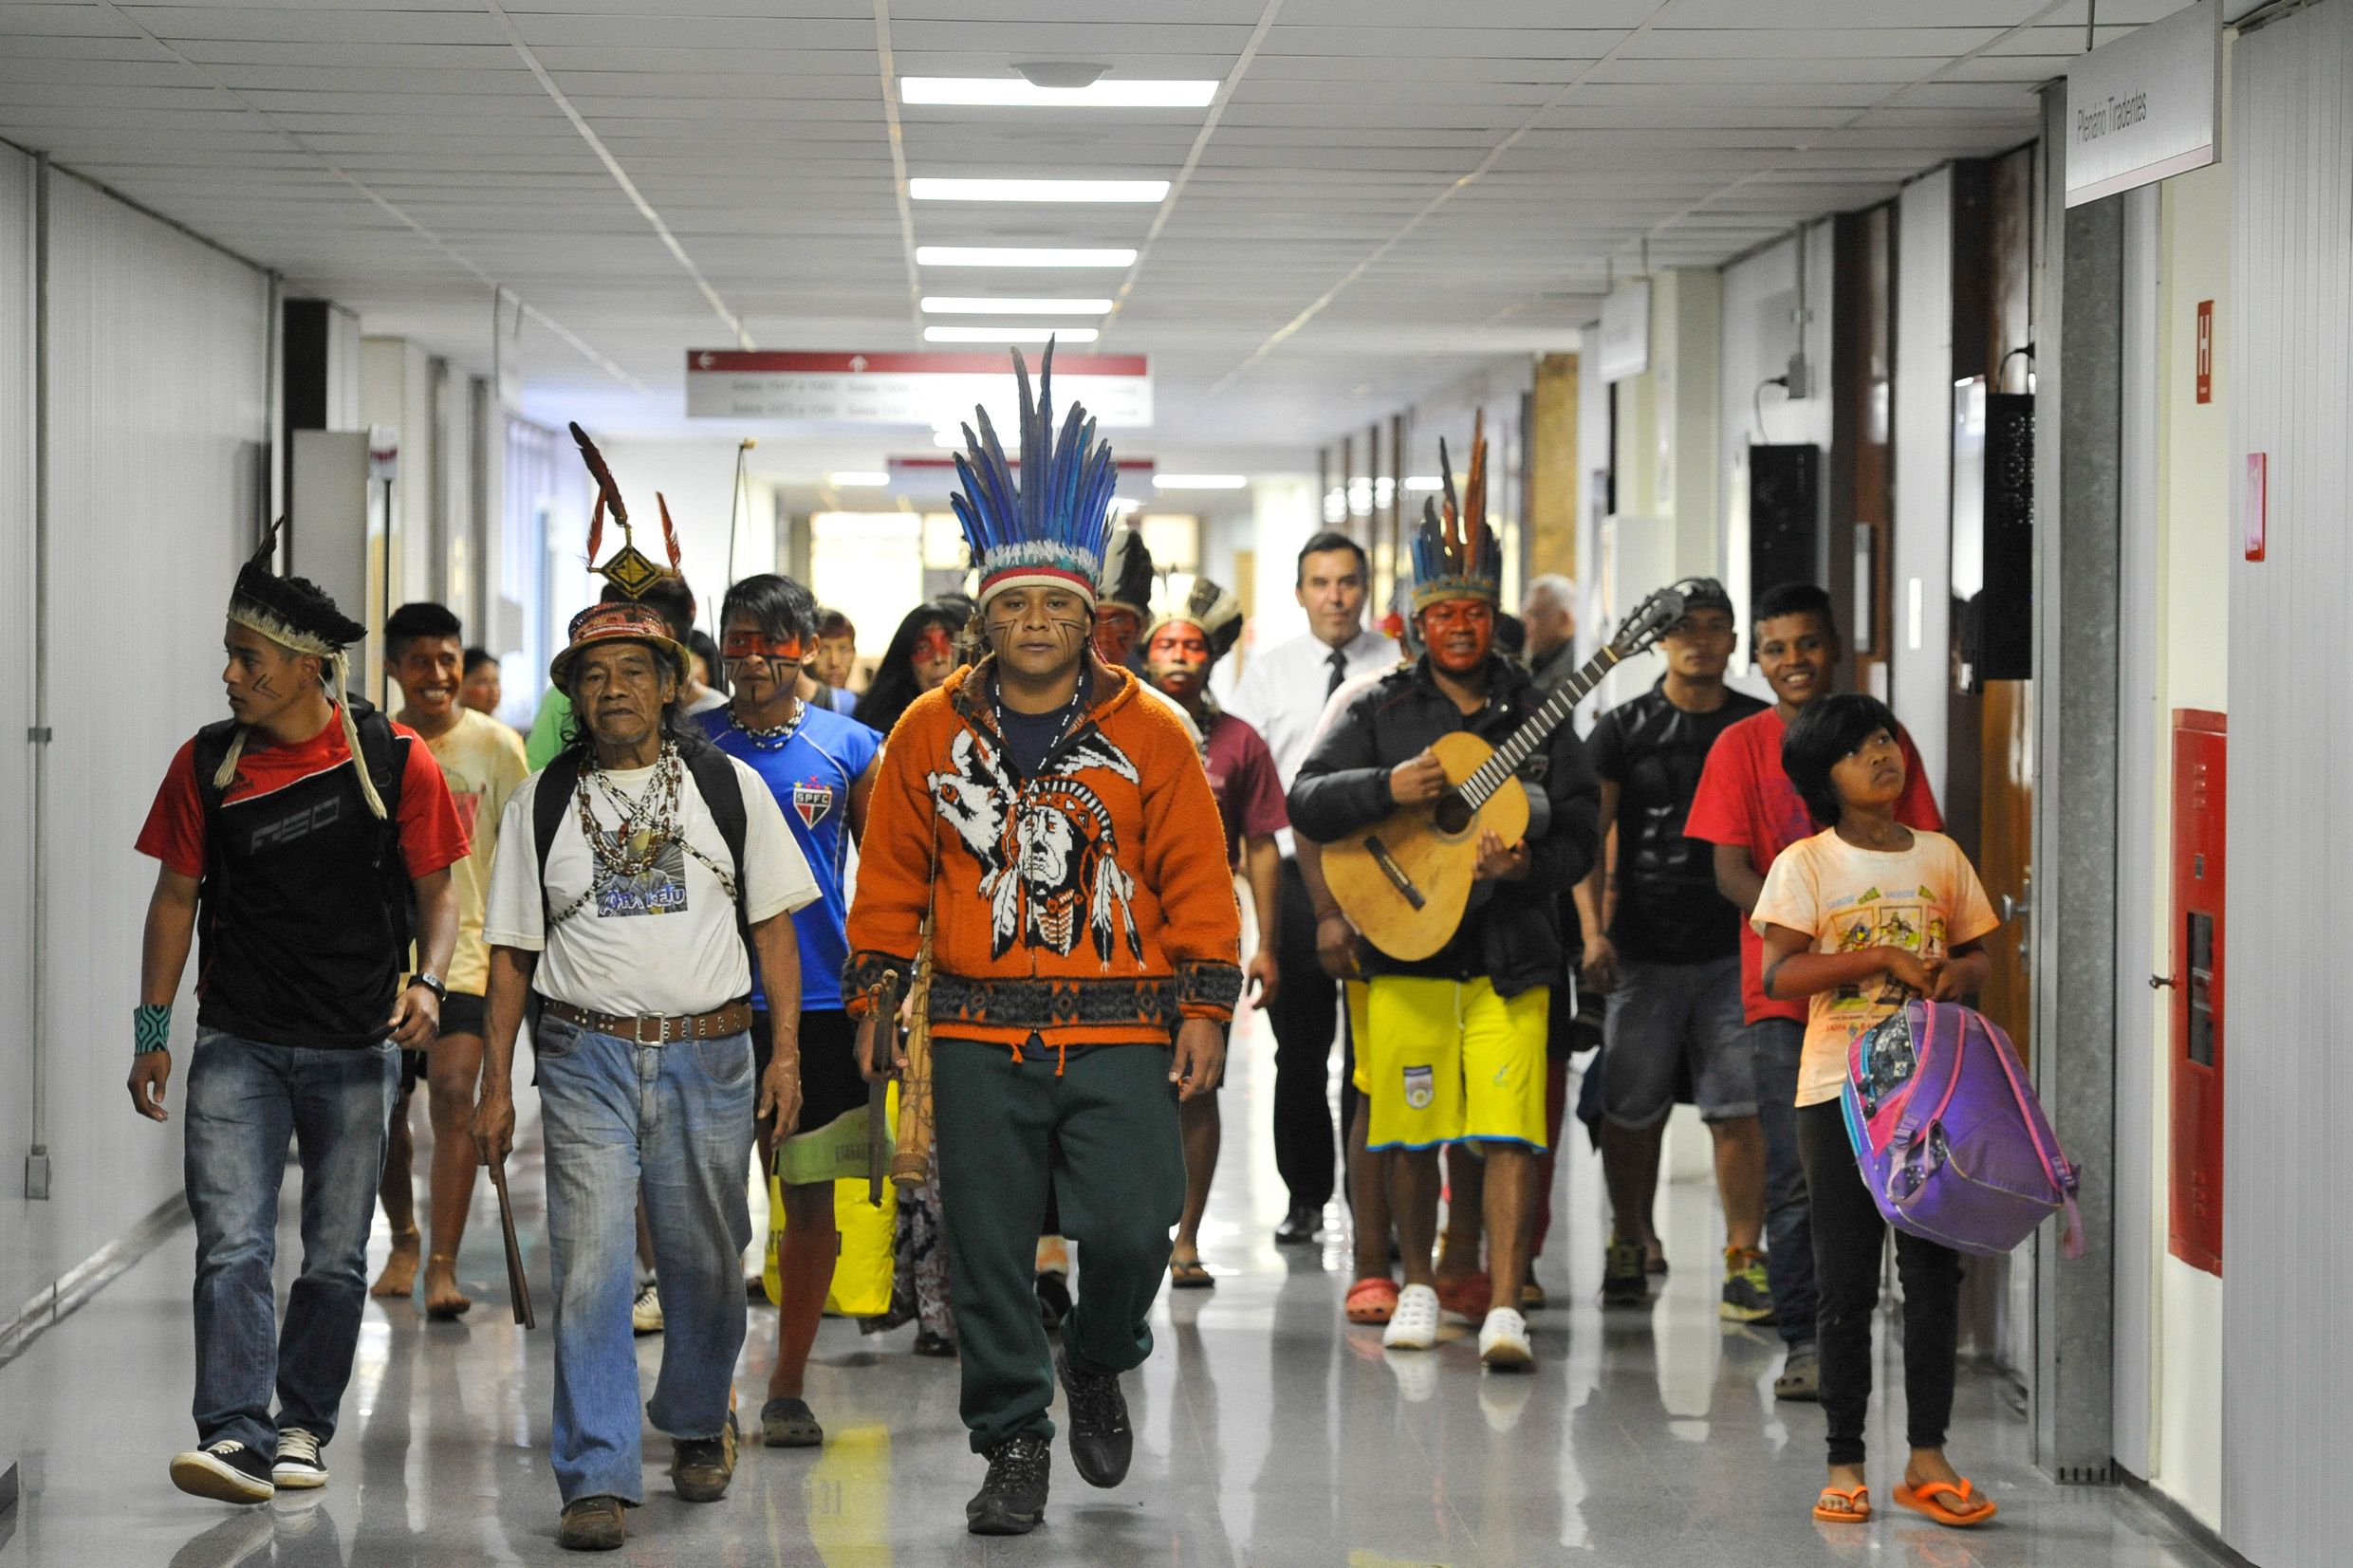 Indígenas guaranis chegam à assembleia em São Paulo. Foto: Ascom/Alesp